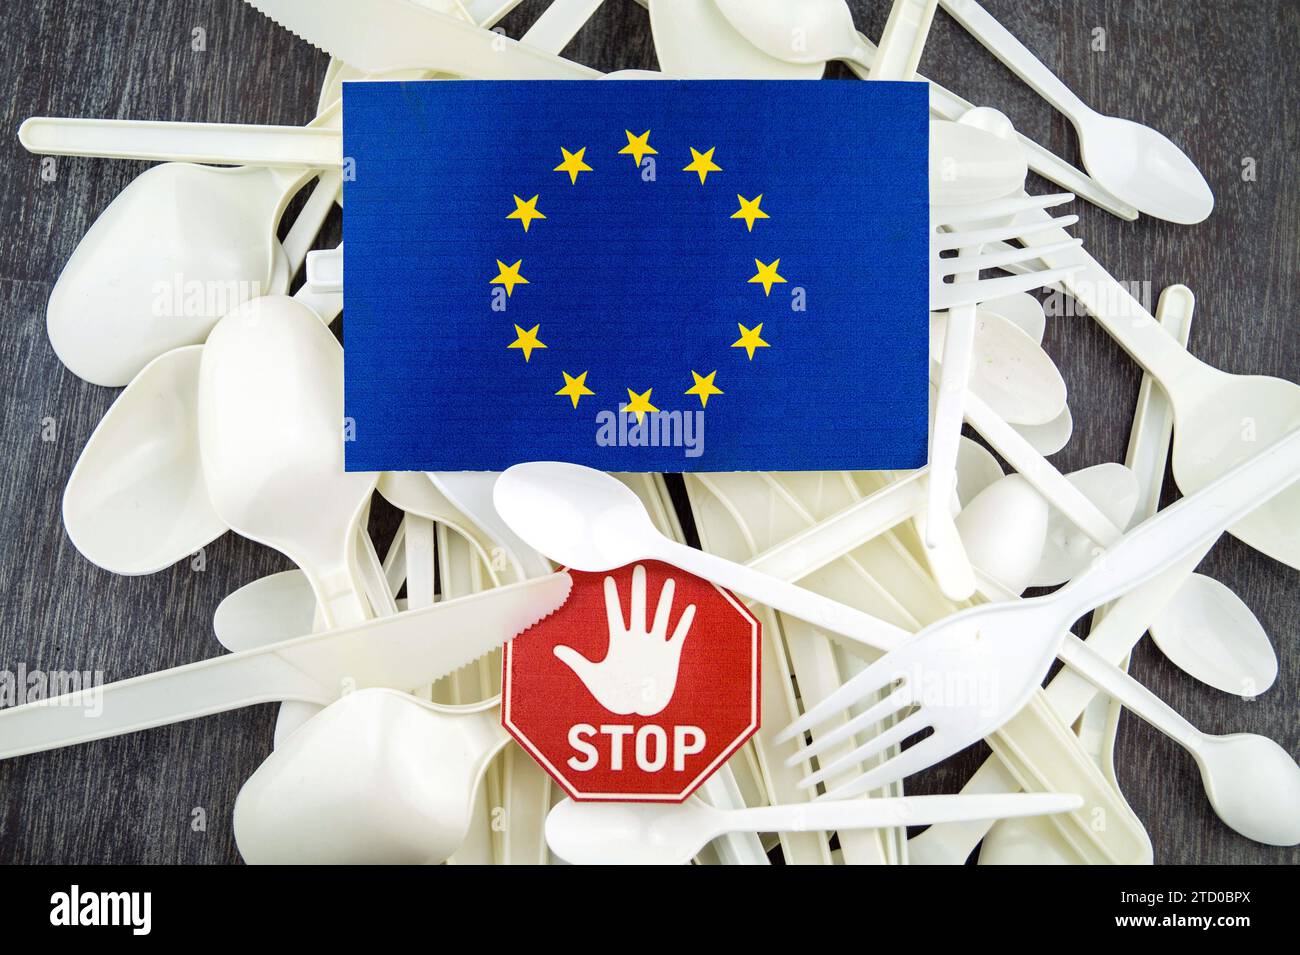 Kunststoffbesteck mit Stoppschild und EU-Flagge, symbolisches Bild für das Verbot von Kunststoff in der EU Stockfoto